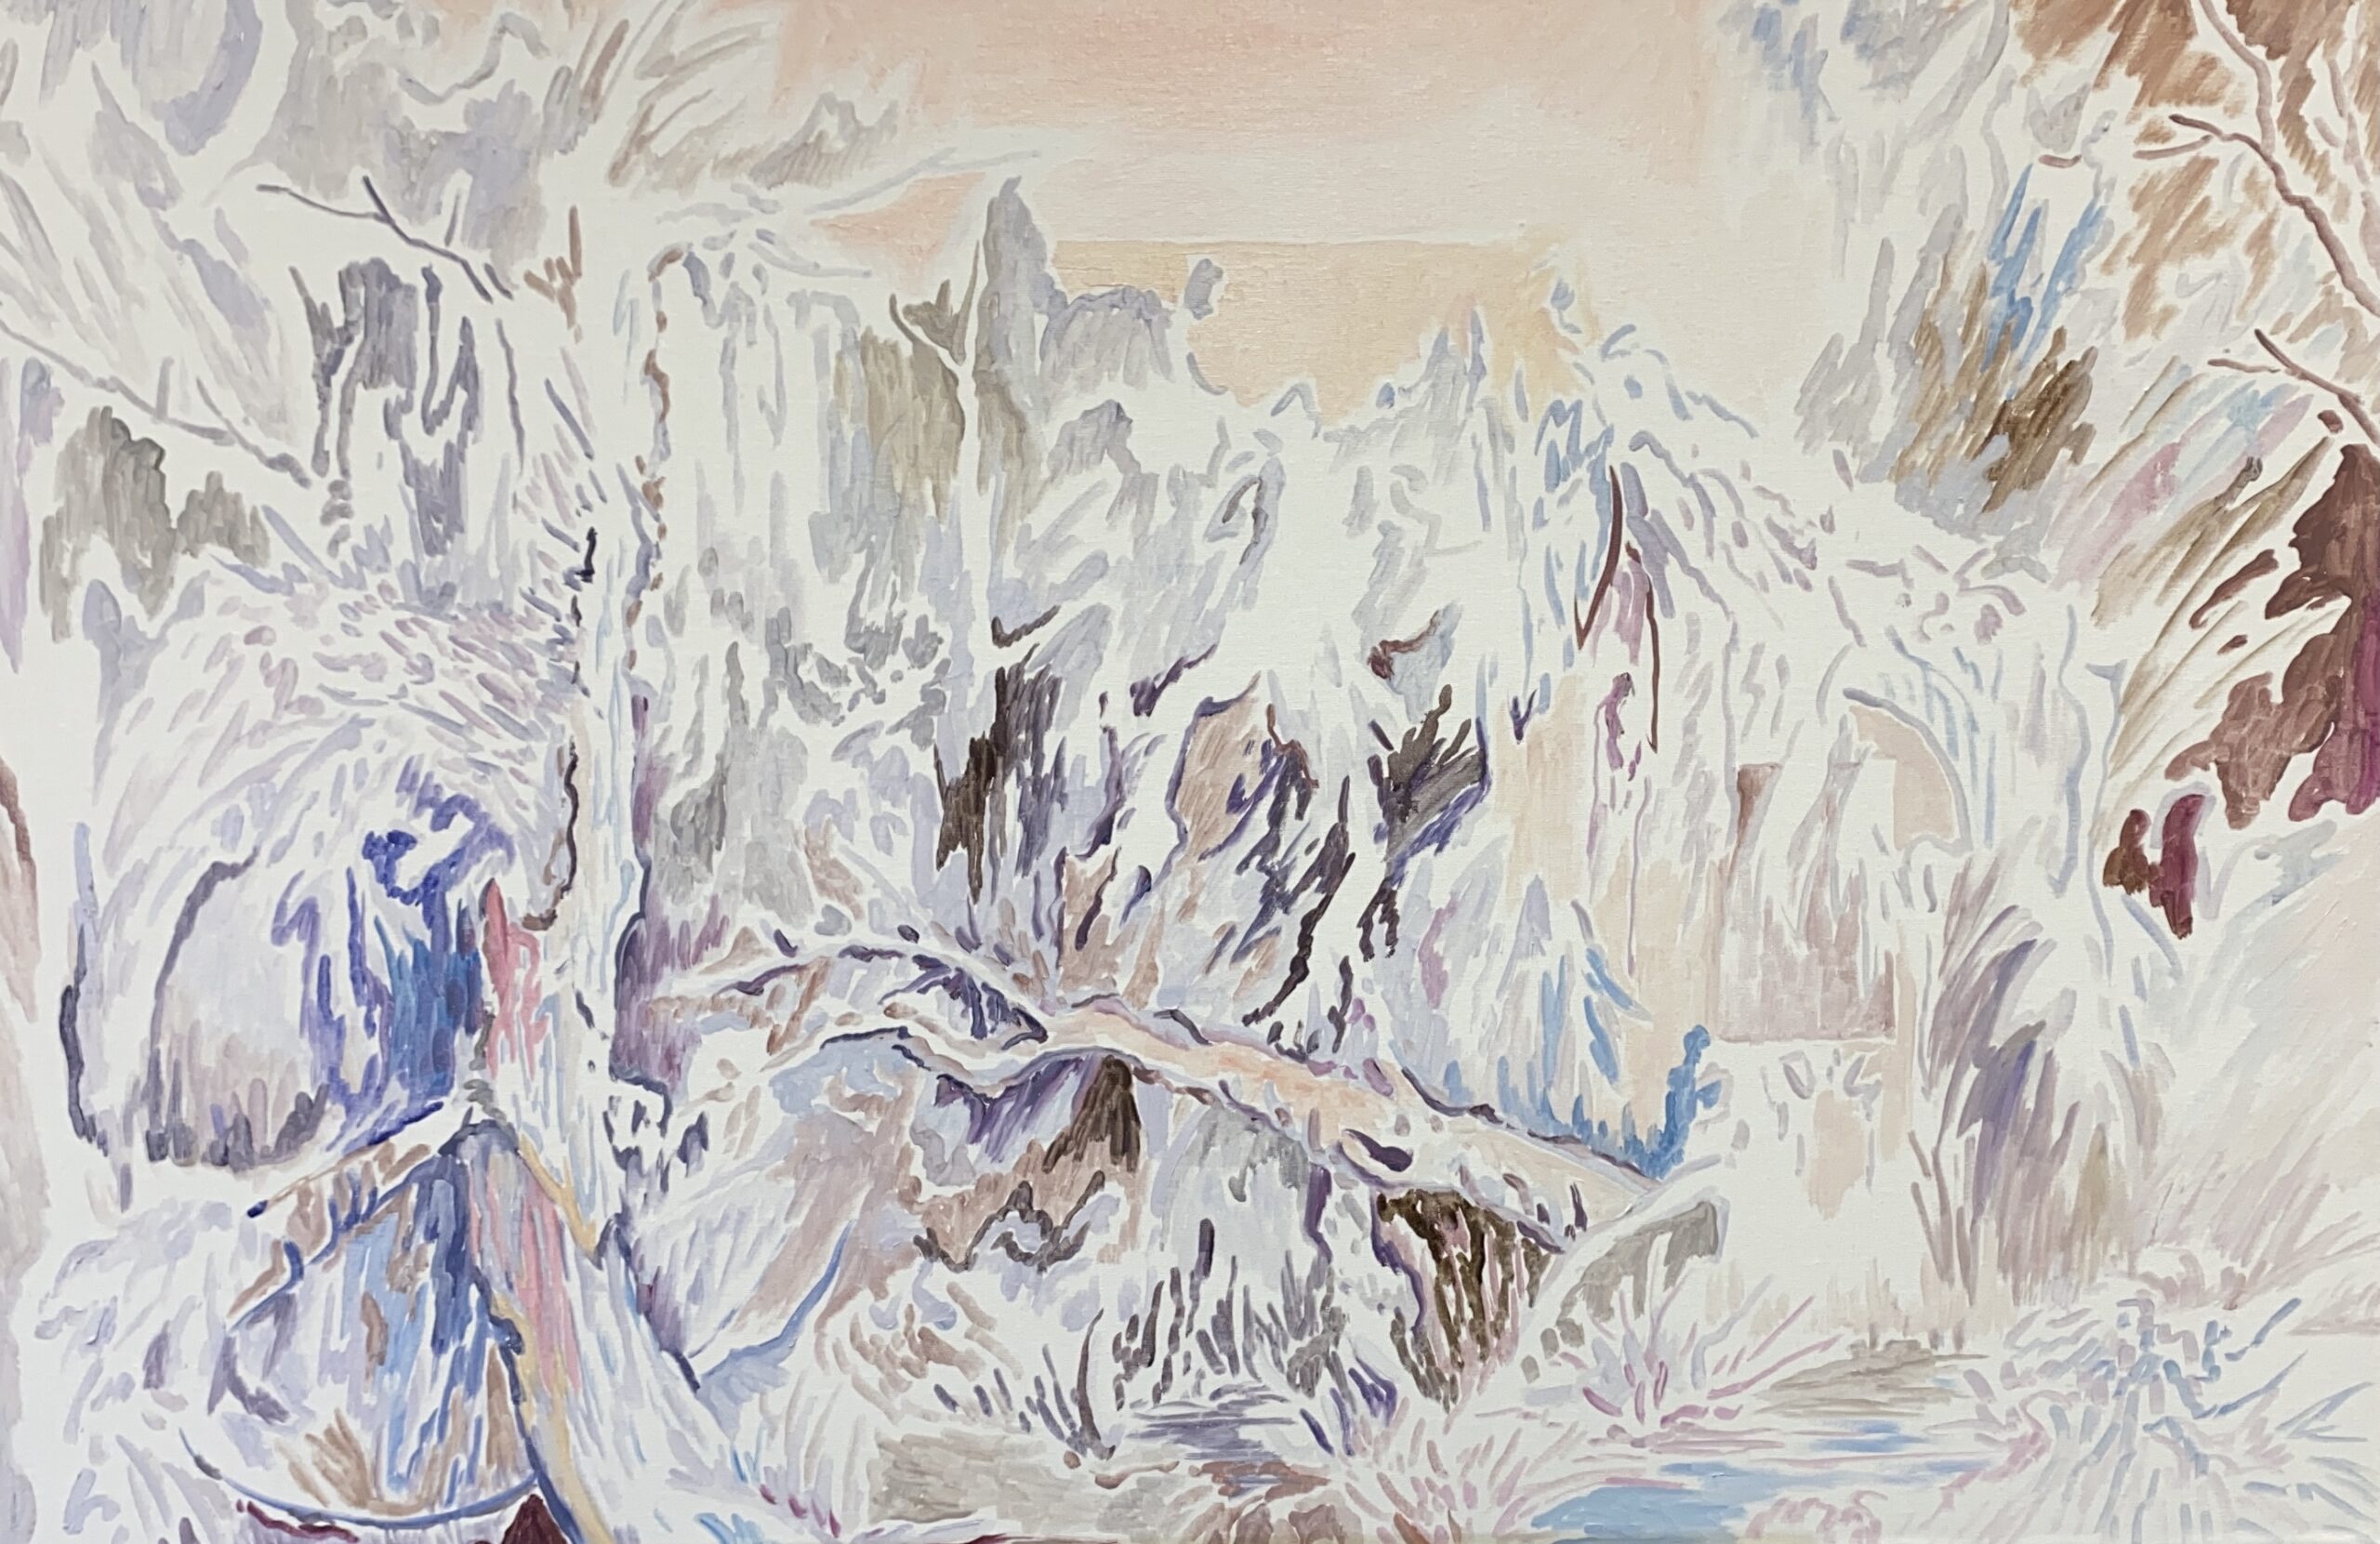 'Awaken I', Yee Tin Fung, Oil on canvas, 60 x 80 cm